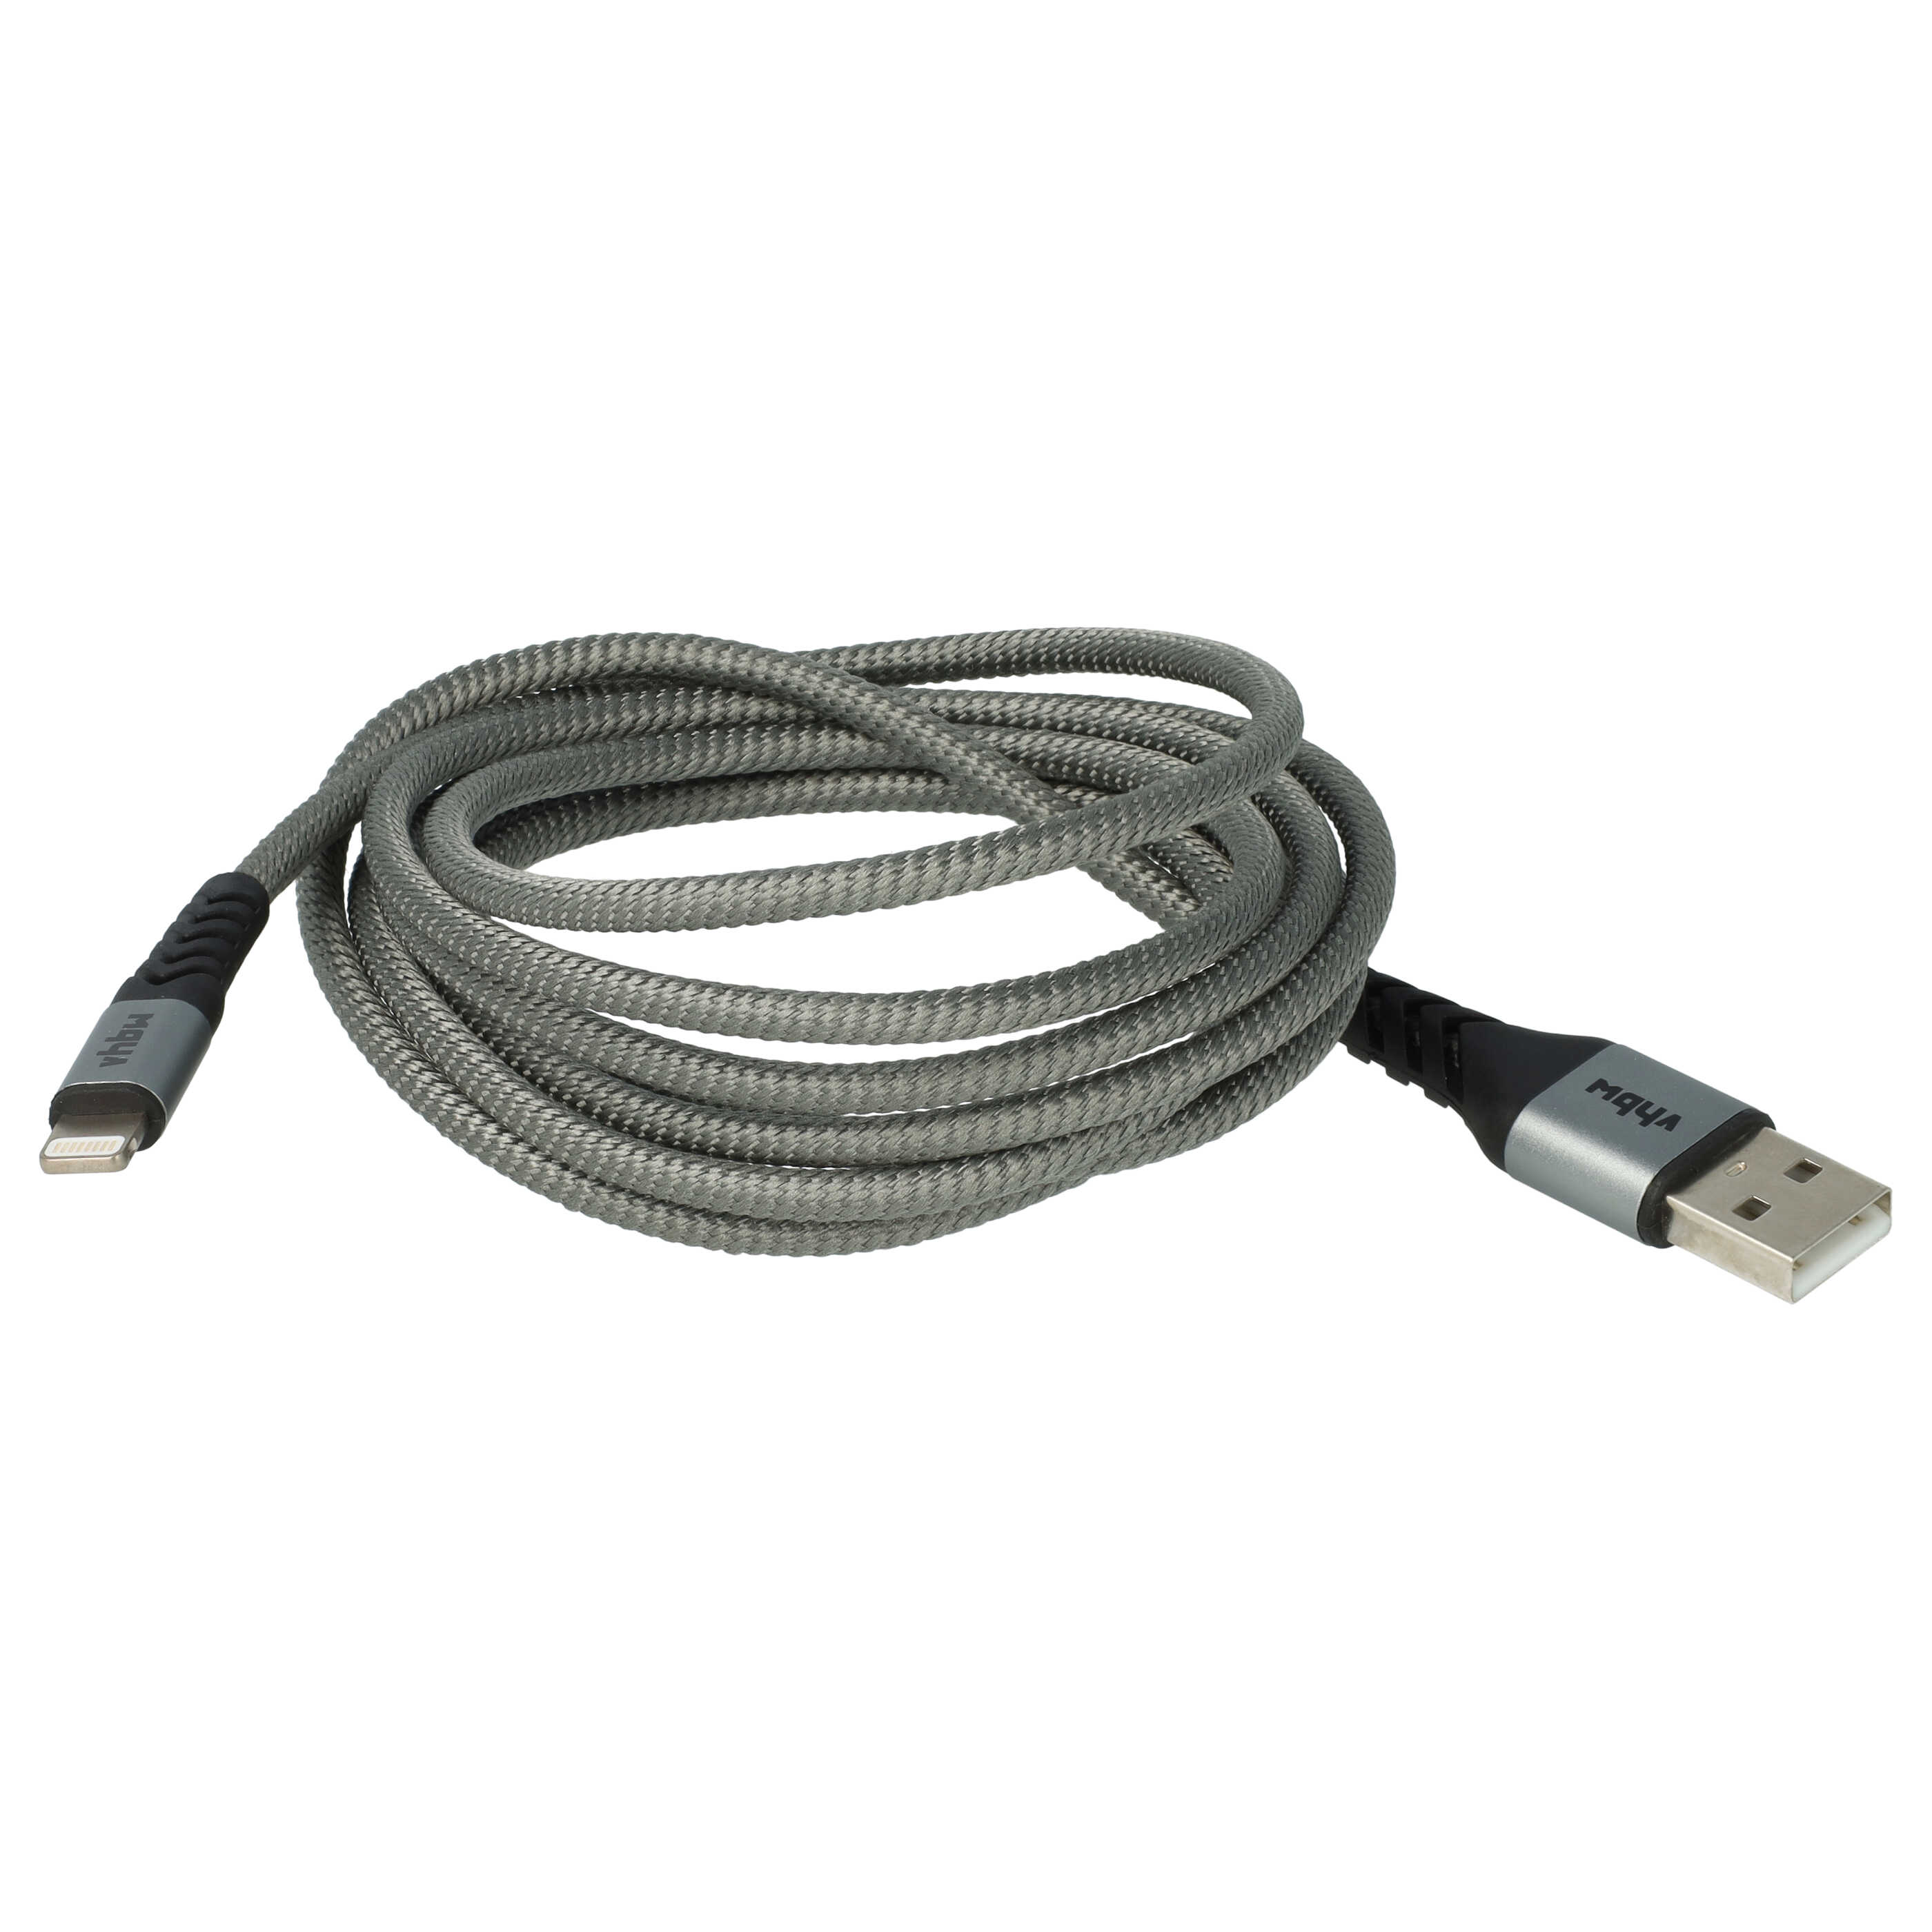 Cavo lightning - USB A per dispositivi Apple iOS Apple AirPods - nero / grigio, 180cm